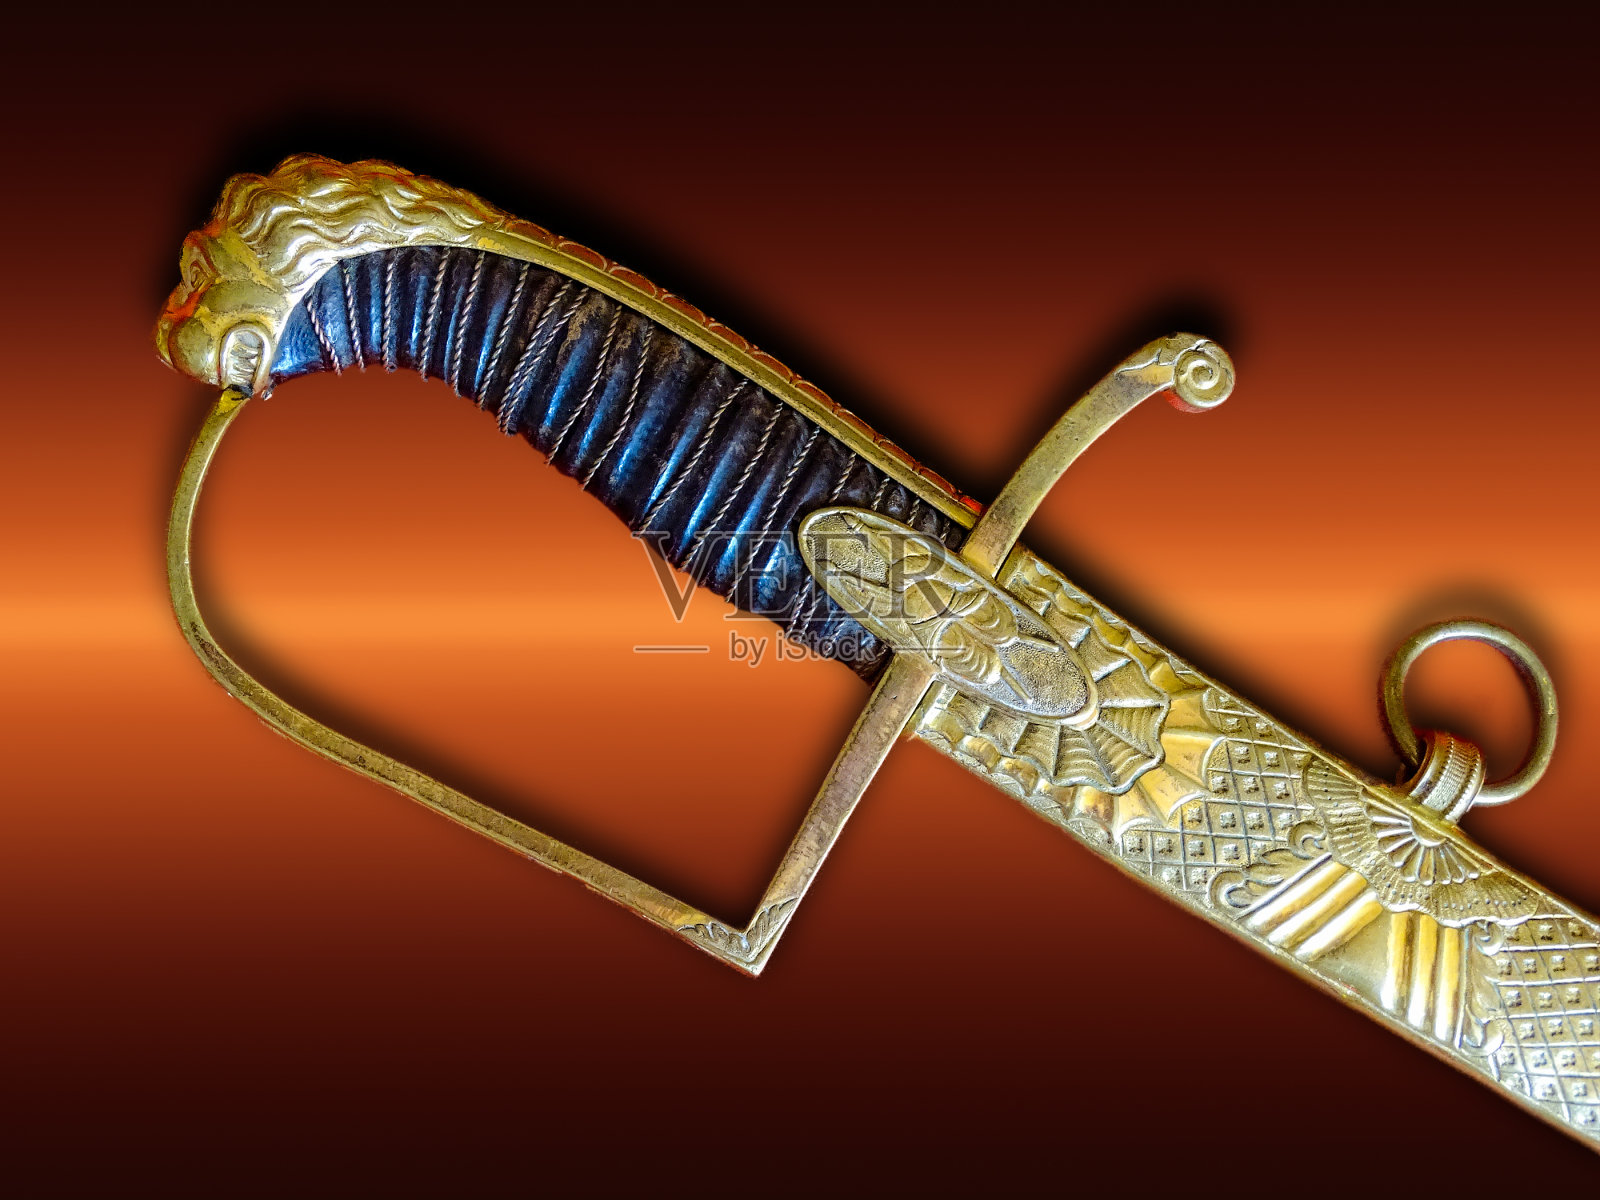 古董军刀。军官军刀阅兵仪式。18世纪末。佩剑拥有拿破仑时代的法国军官照片摄影图片